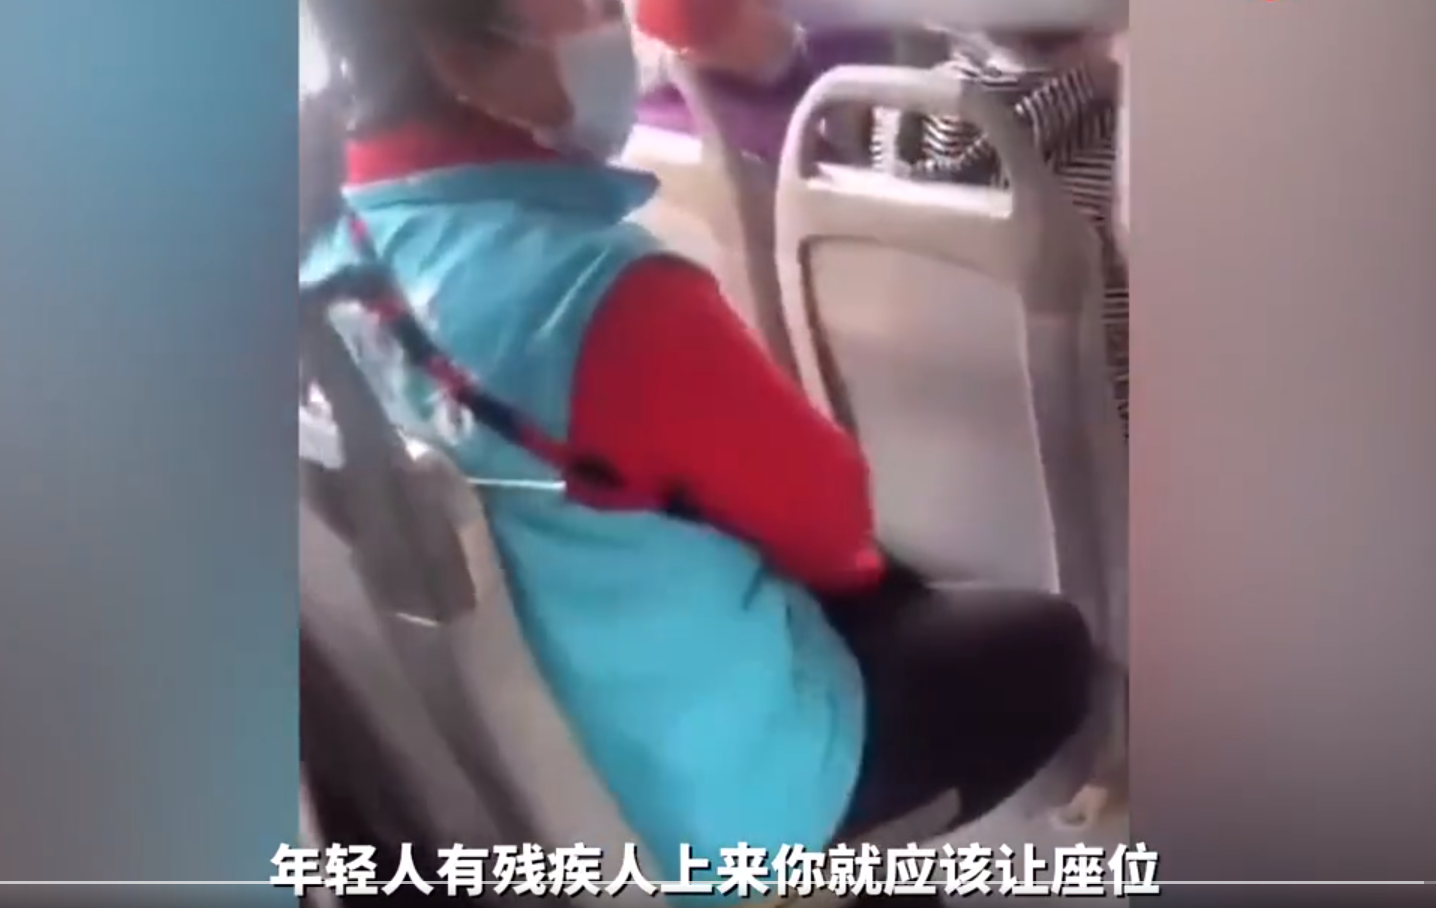 “臭外地的，到北京要饭来了”，北京大妈嫌女孩让座慢，对其贬低大骂